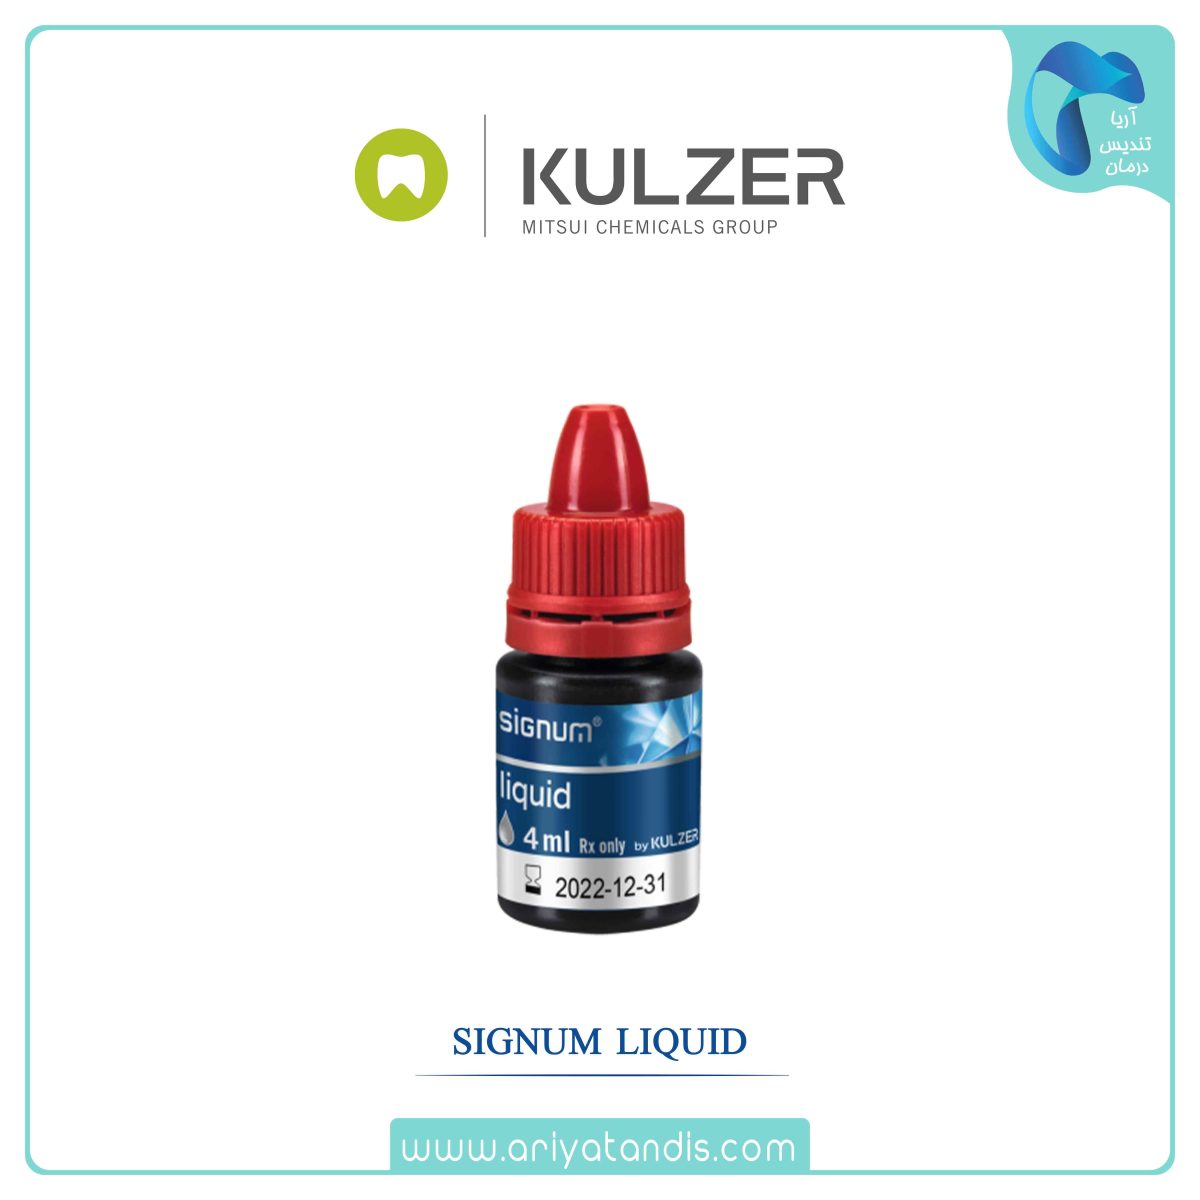 مایع سیگنوم کولزر Signum Liquid Kulzer